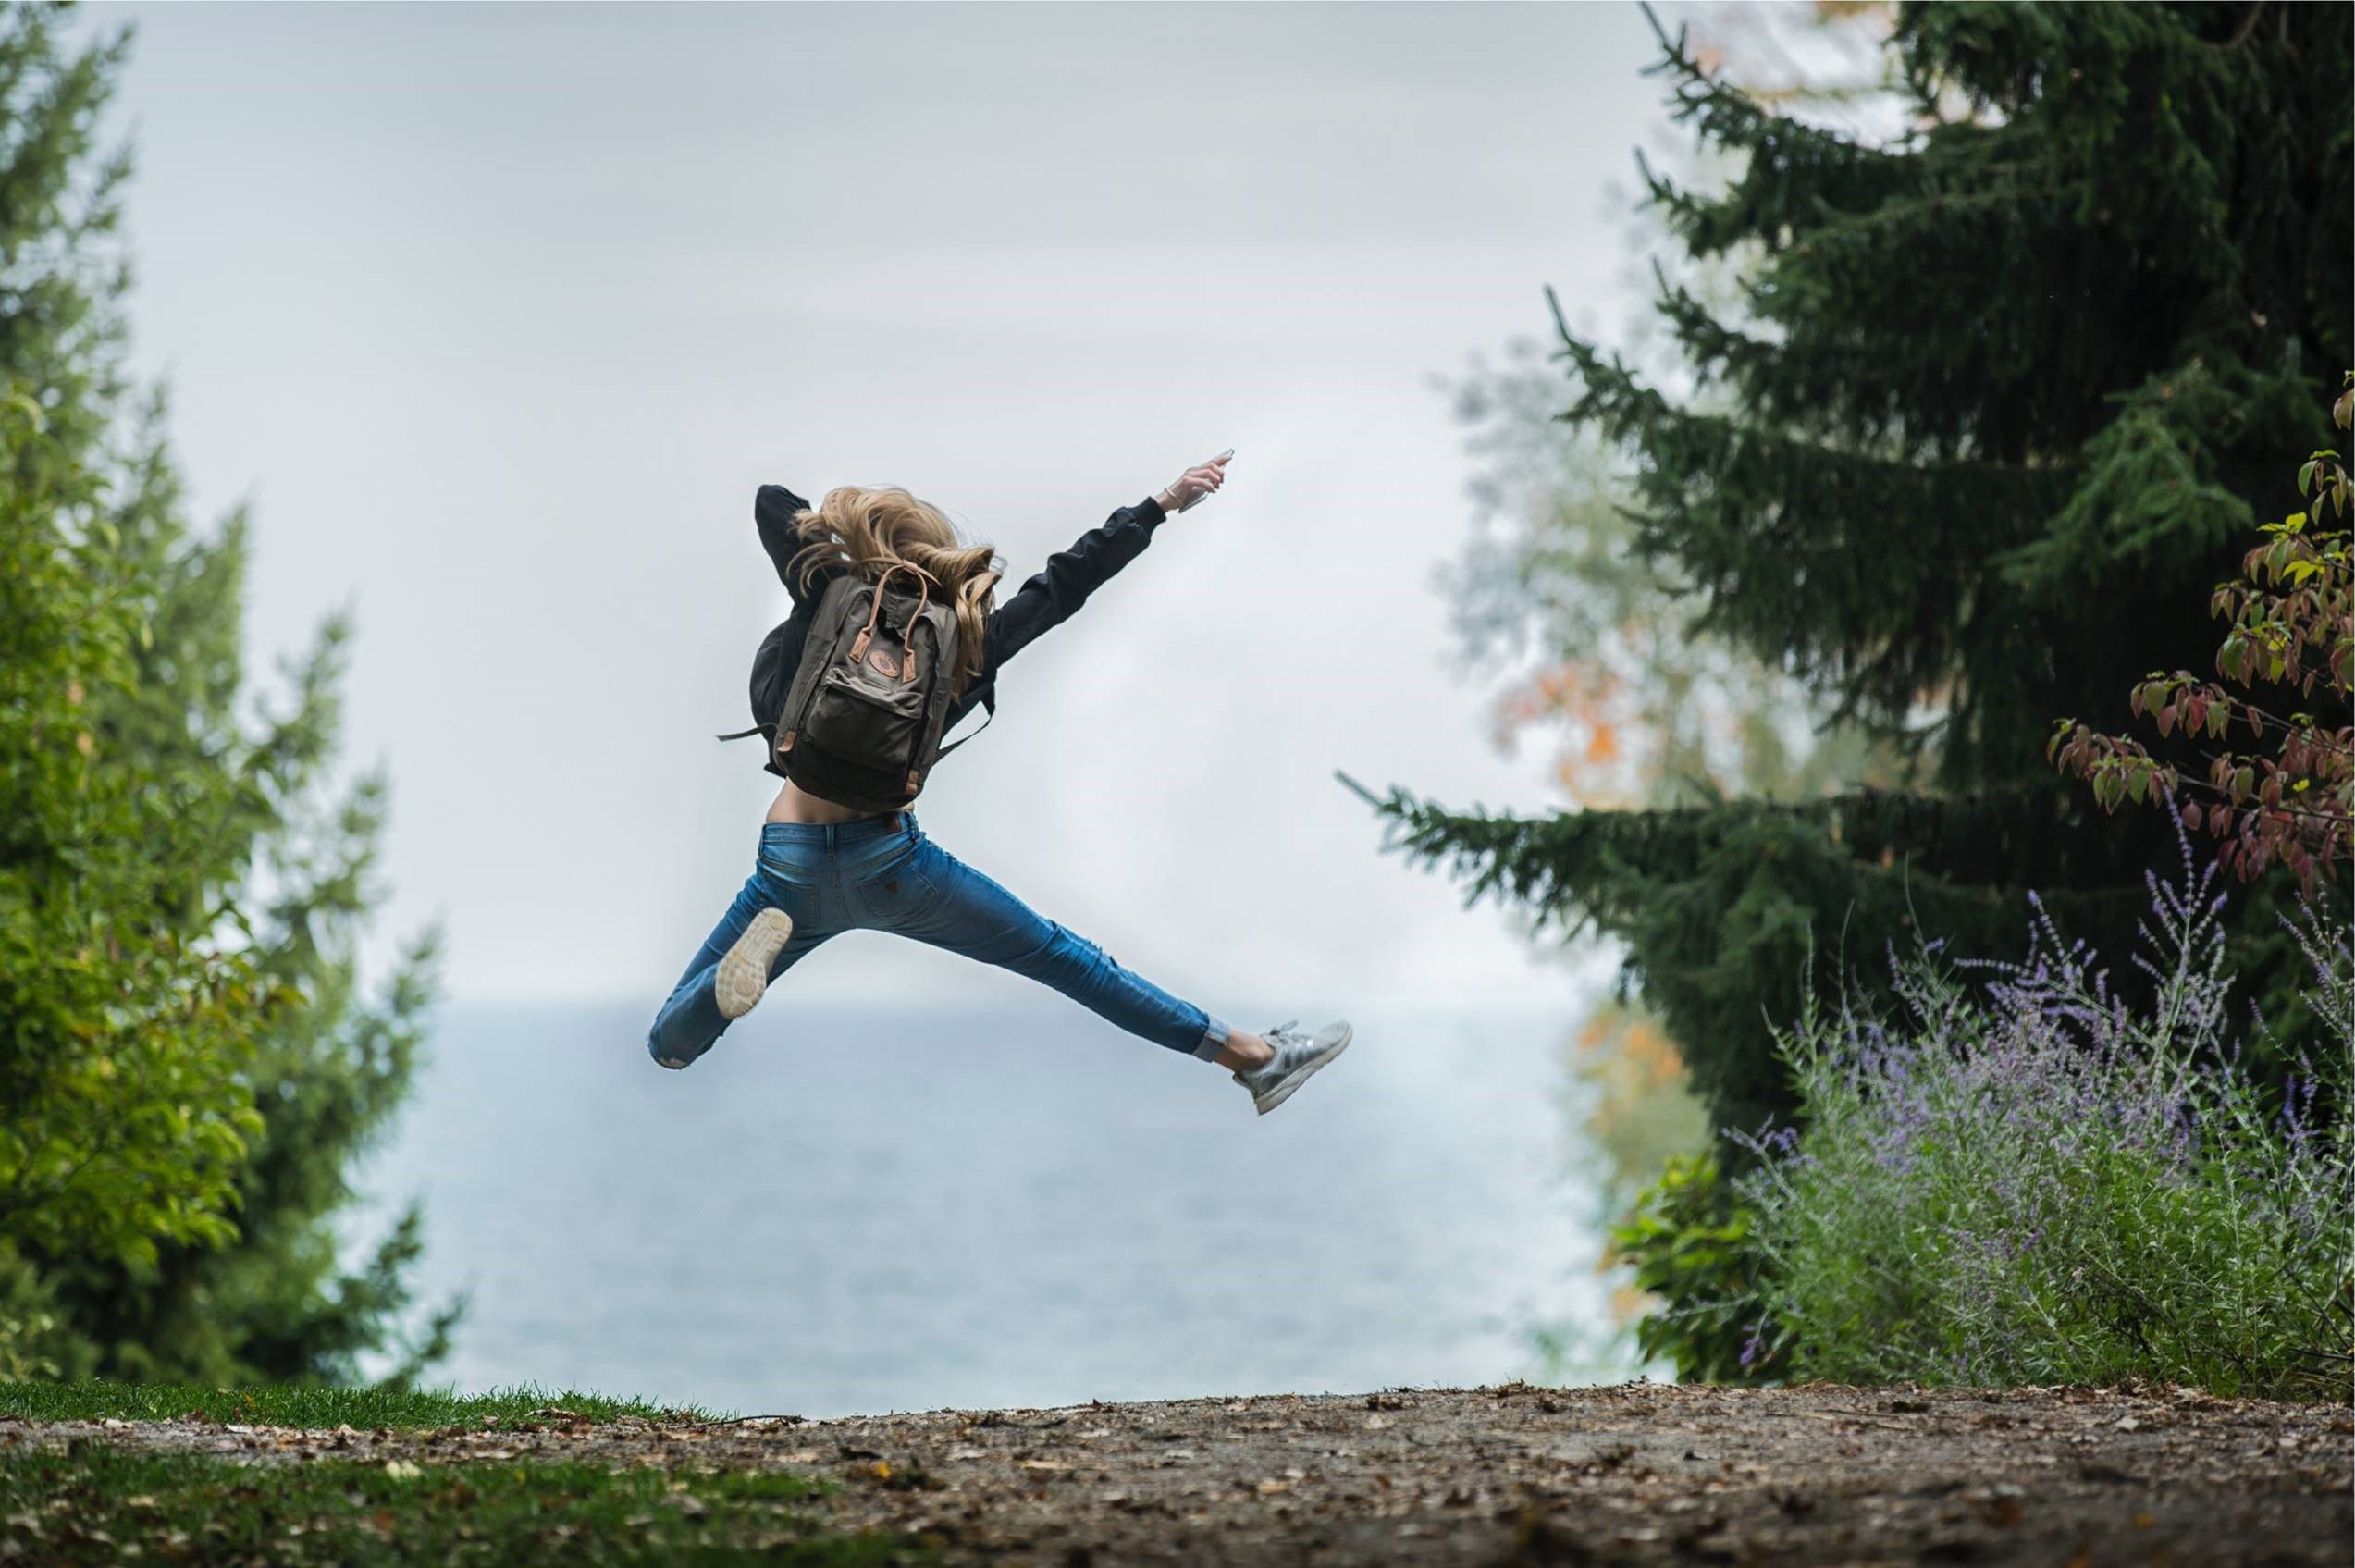 Omslagsbild till undersökningen om ungas psykiska hälsa, en ungdom med ryggsäck fotograferad bakifrån som hoppar högt på en grusväg kantad av stora granar.